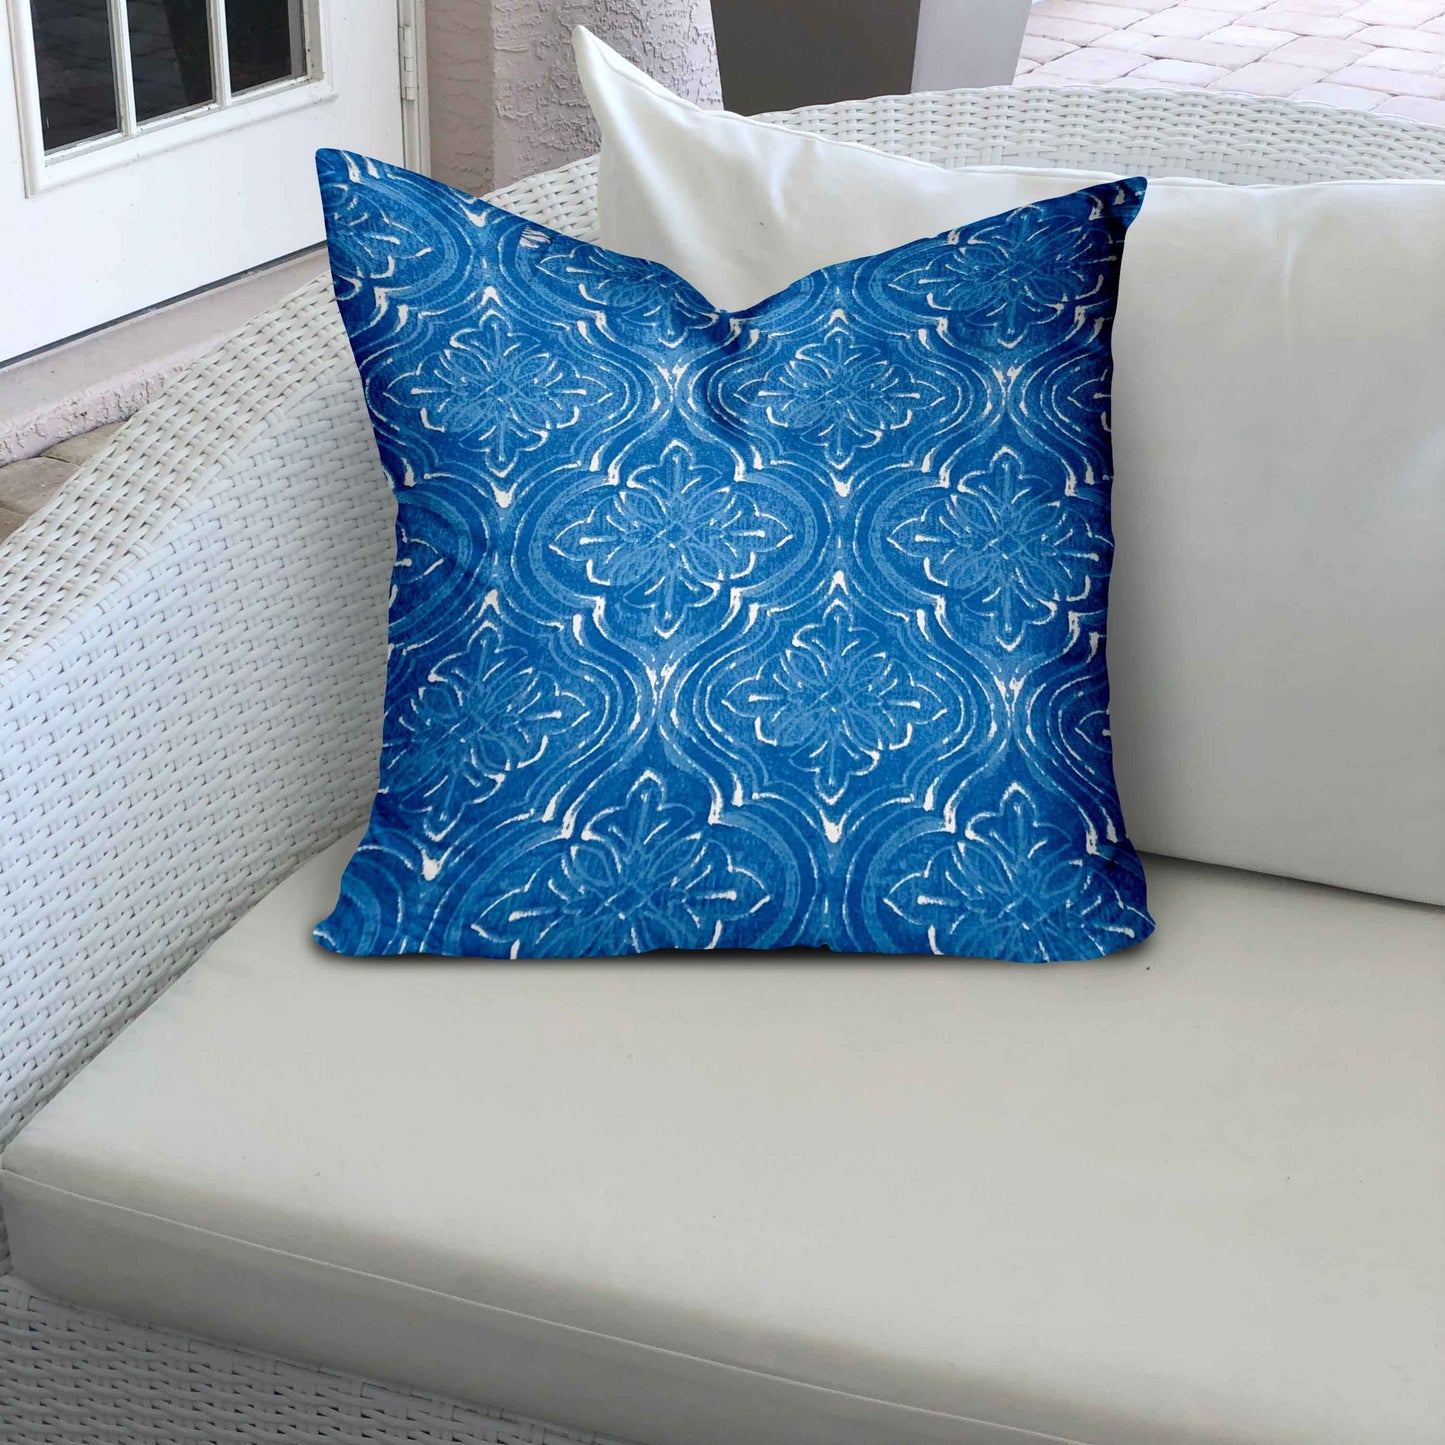 ATLAS Indoor/Outdoor Soft Royal Pillow, Zipper Cover w/Insert, 36x36